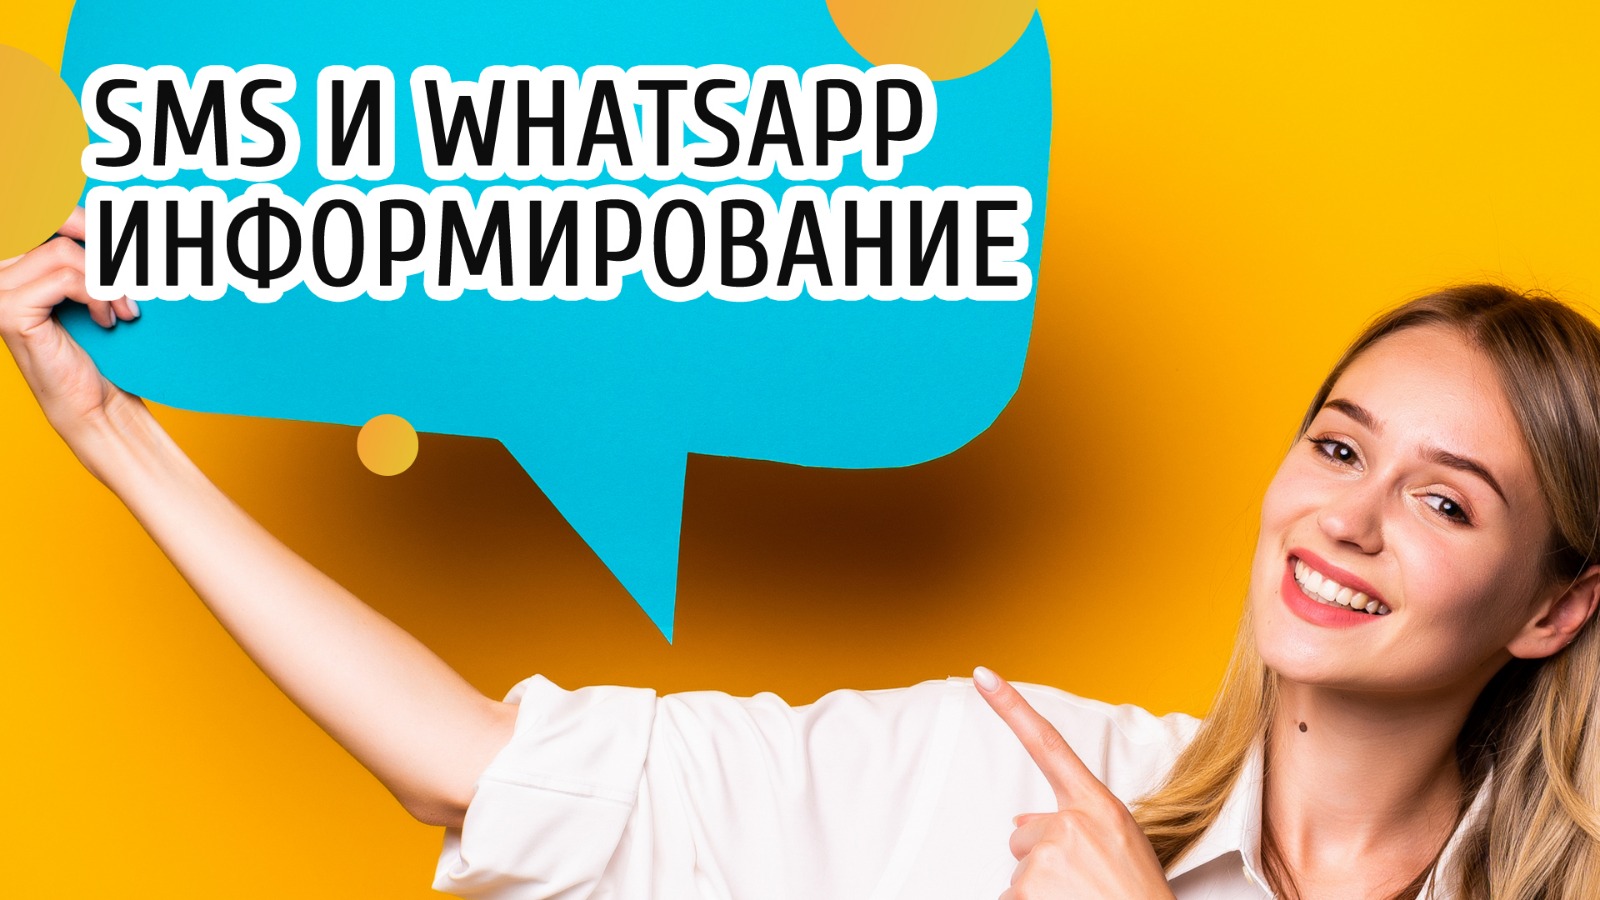 WhatsApp и SMS: больше, чем просто сообщения - это мощные инструменты продвижения вашего бизнеса.